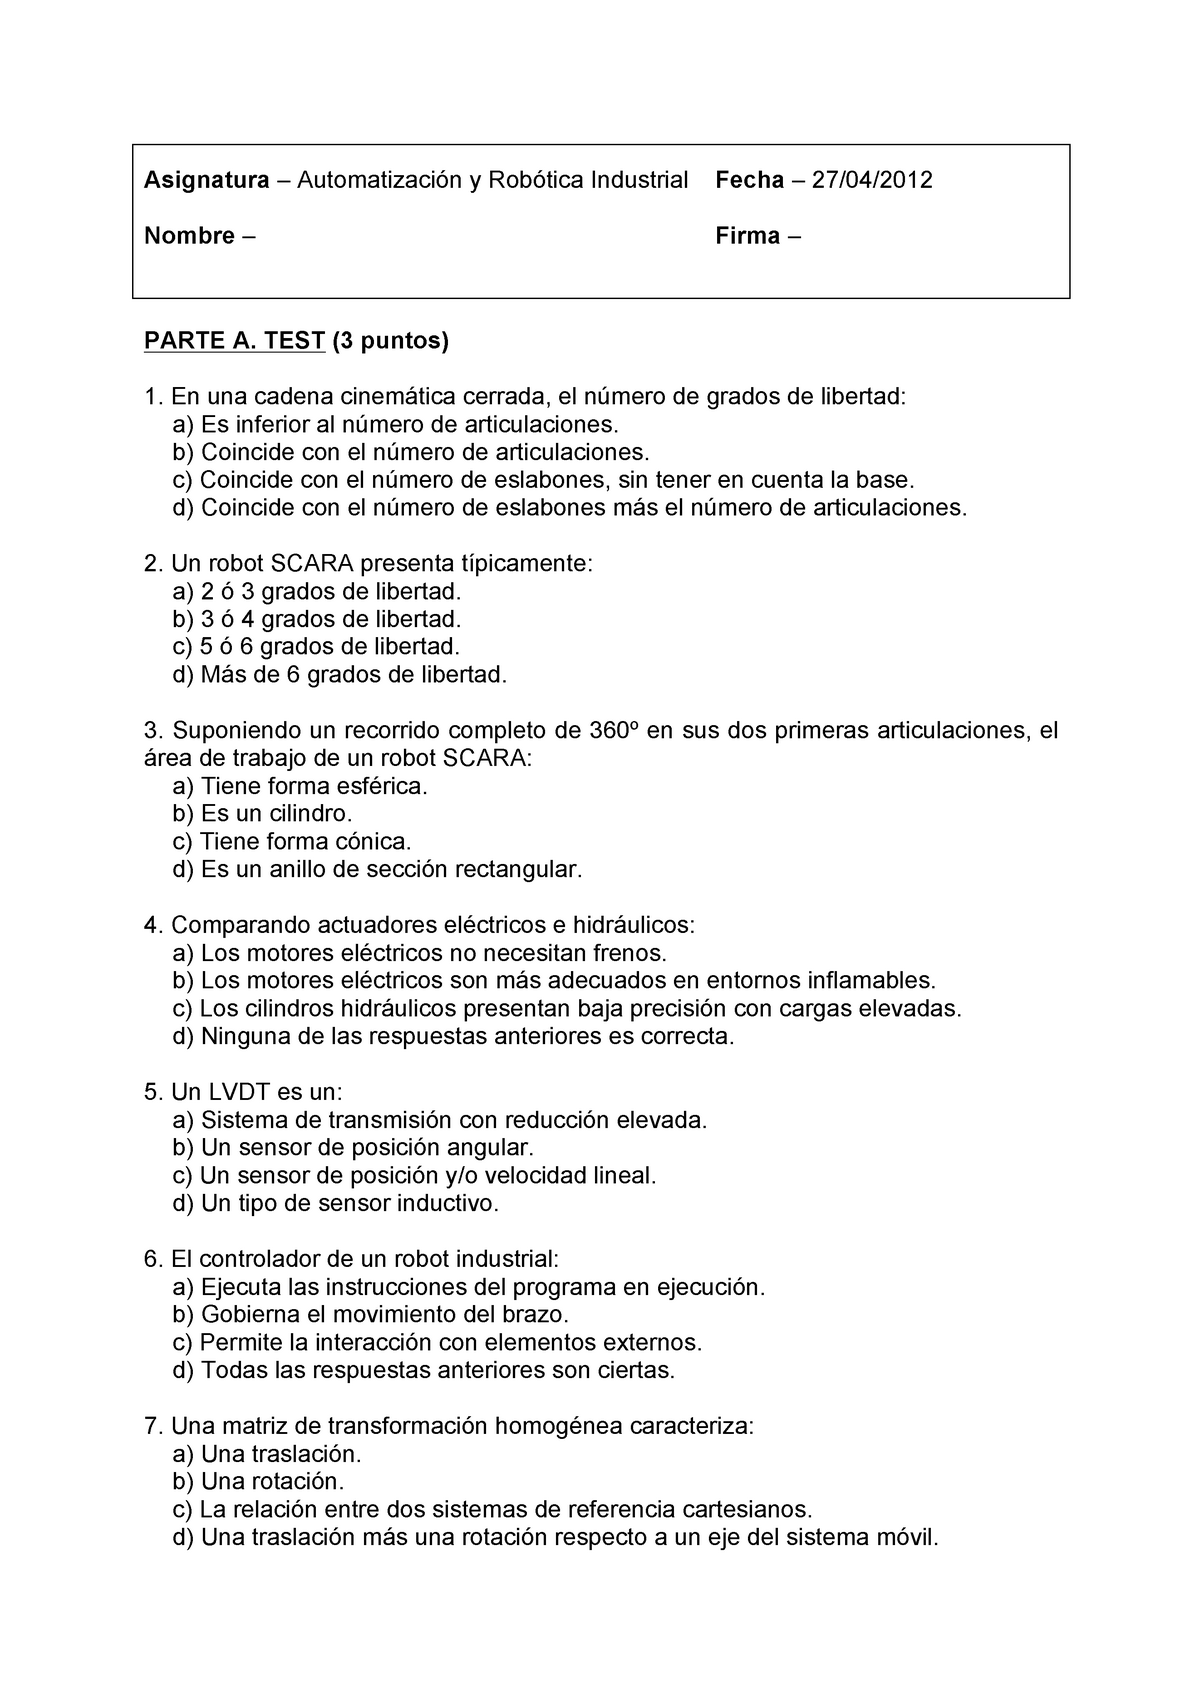 ARI control 1 qp1112 - Apuntes, examenes y de examenes Parciales/Finales de la Universidad - Studocu